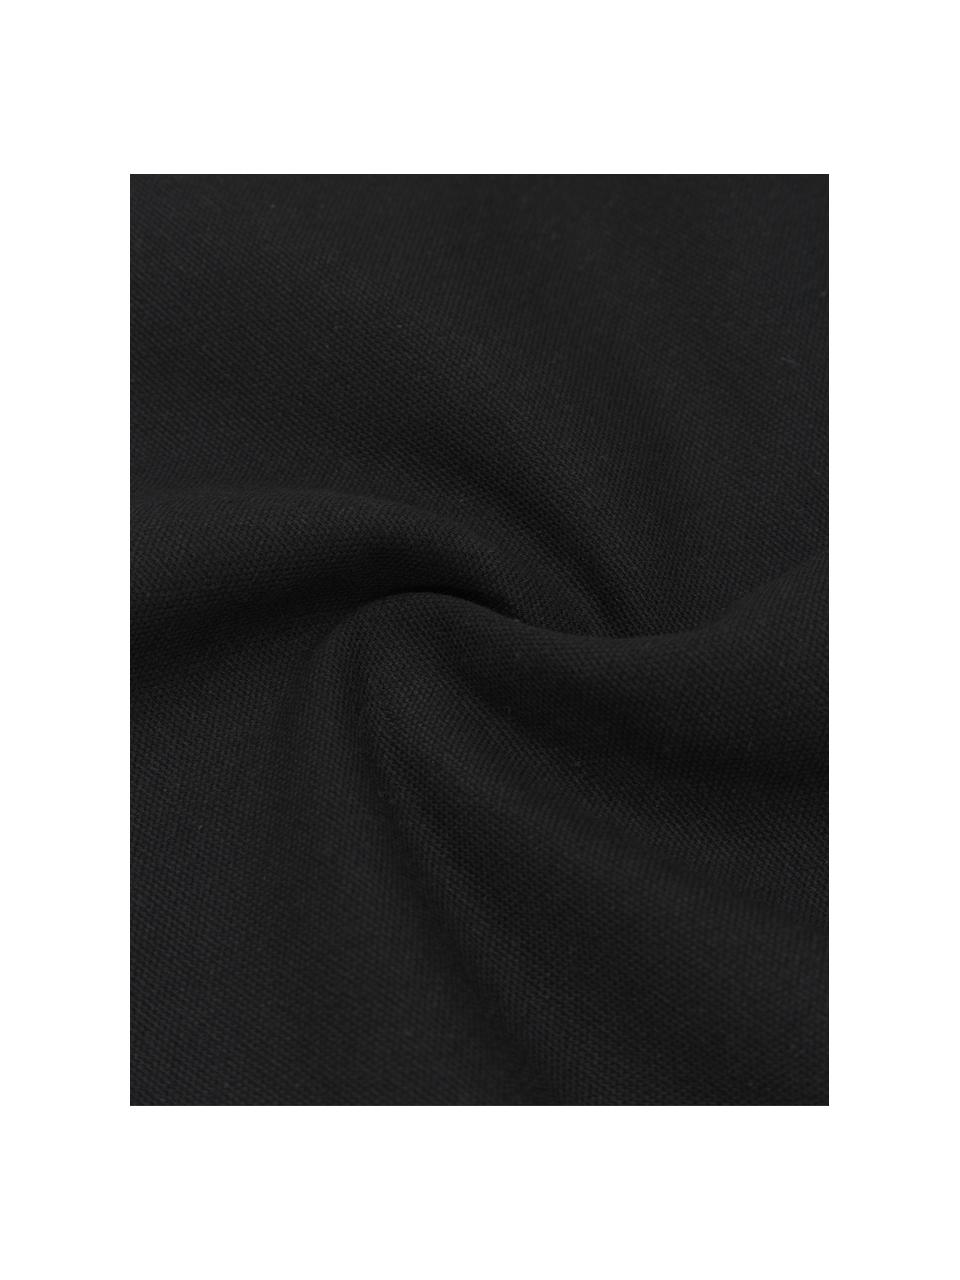 Poszewka na poduszkę z bawełny z chwostami Piazza, 100% bawełna, Czarny, biały, S 50 x D 50 cm